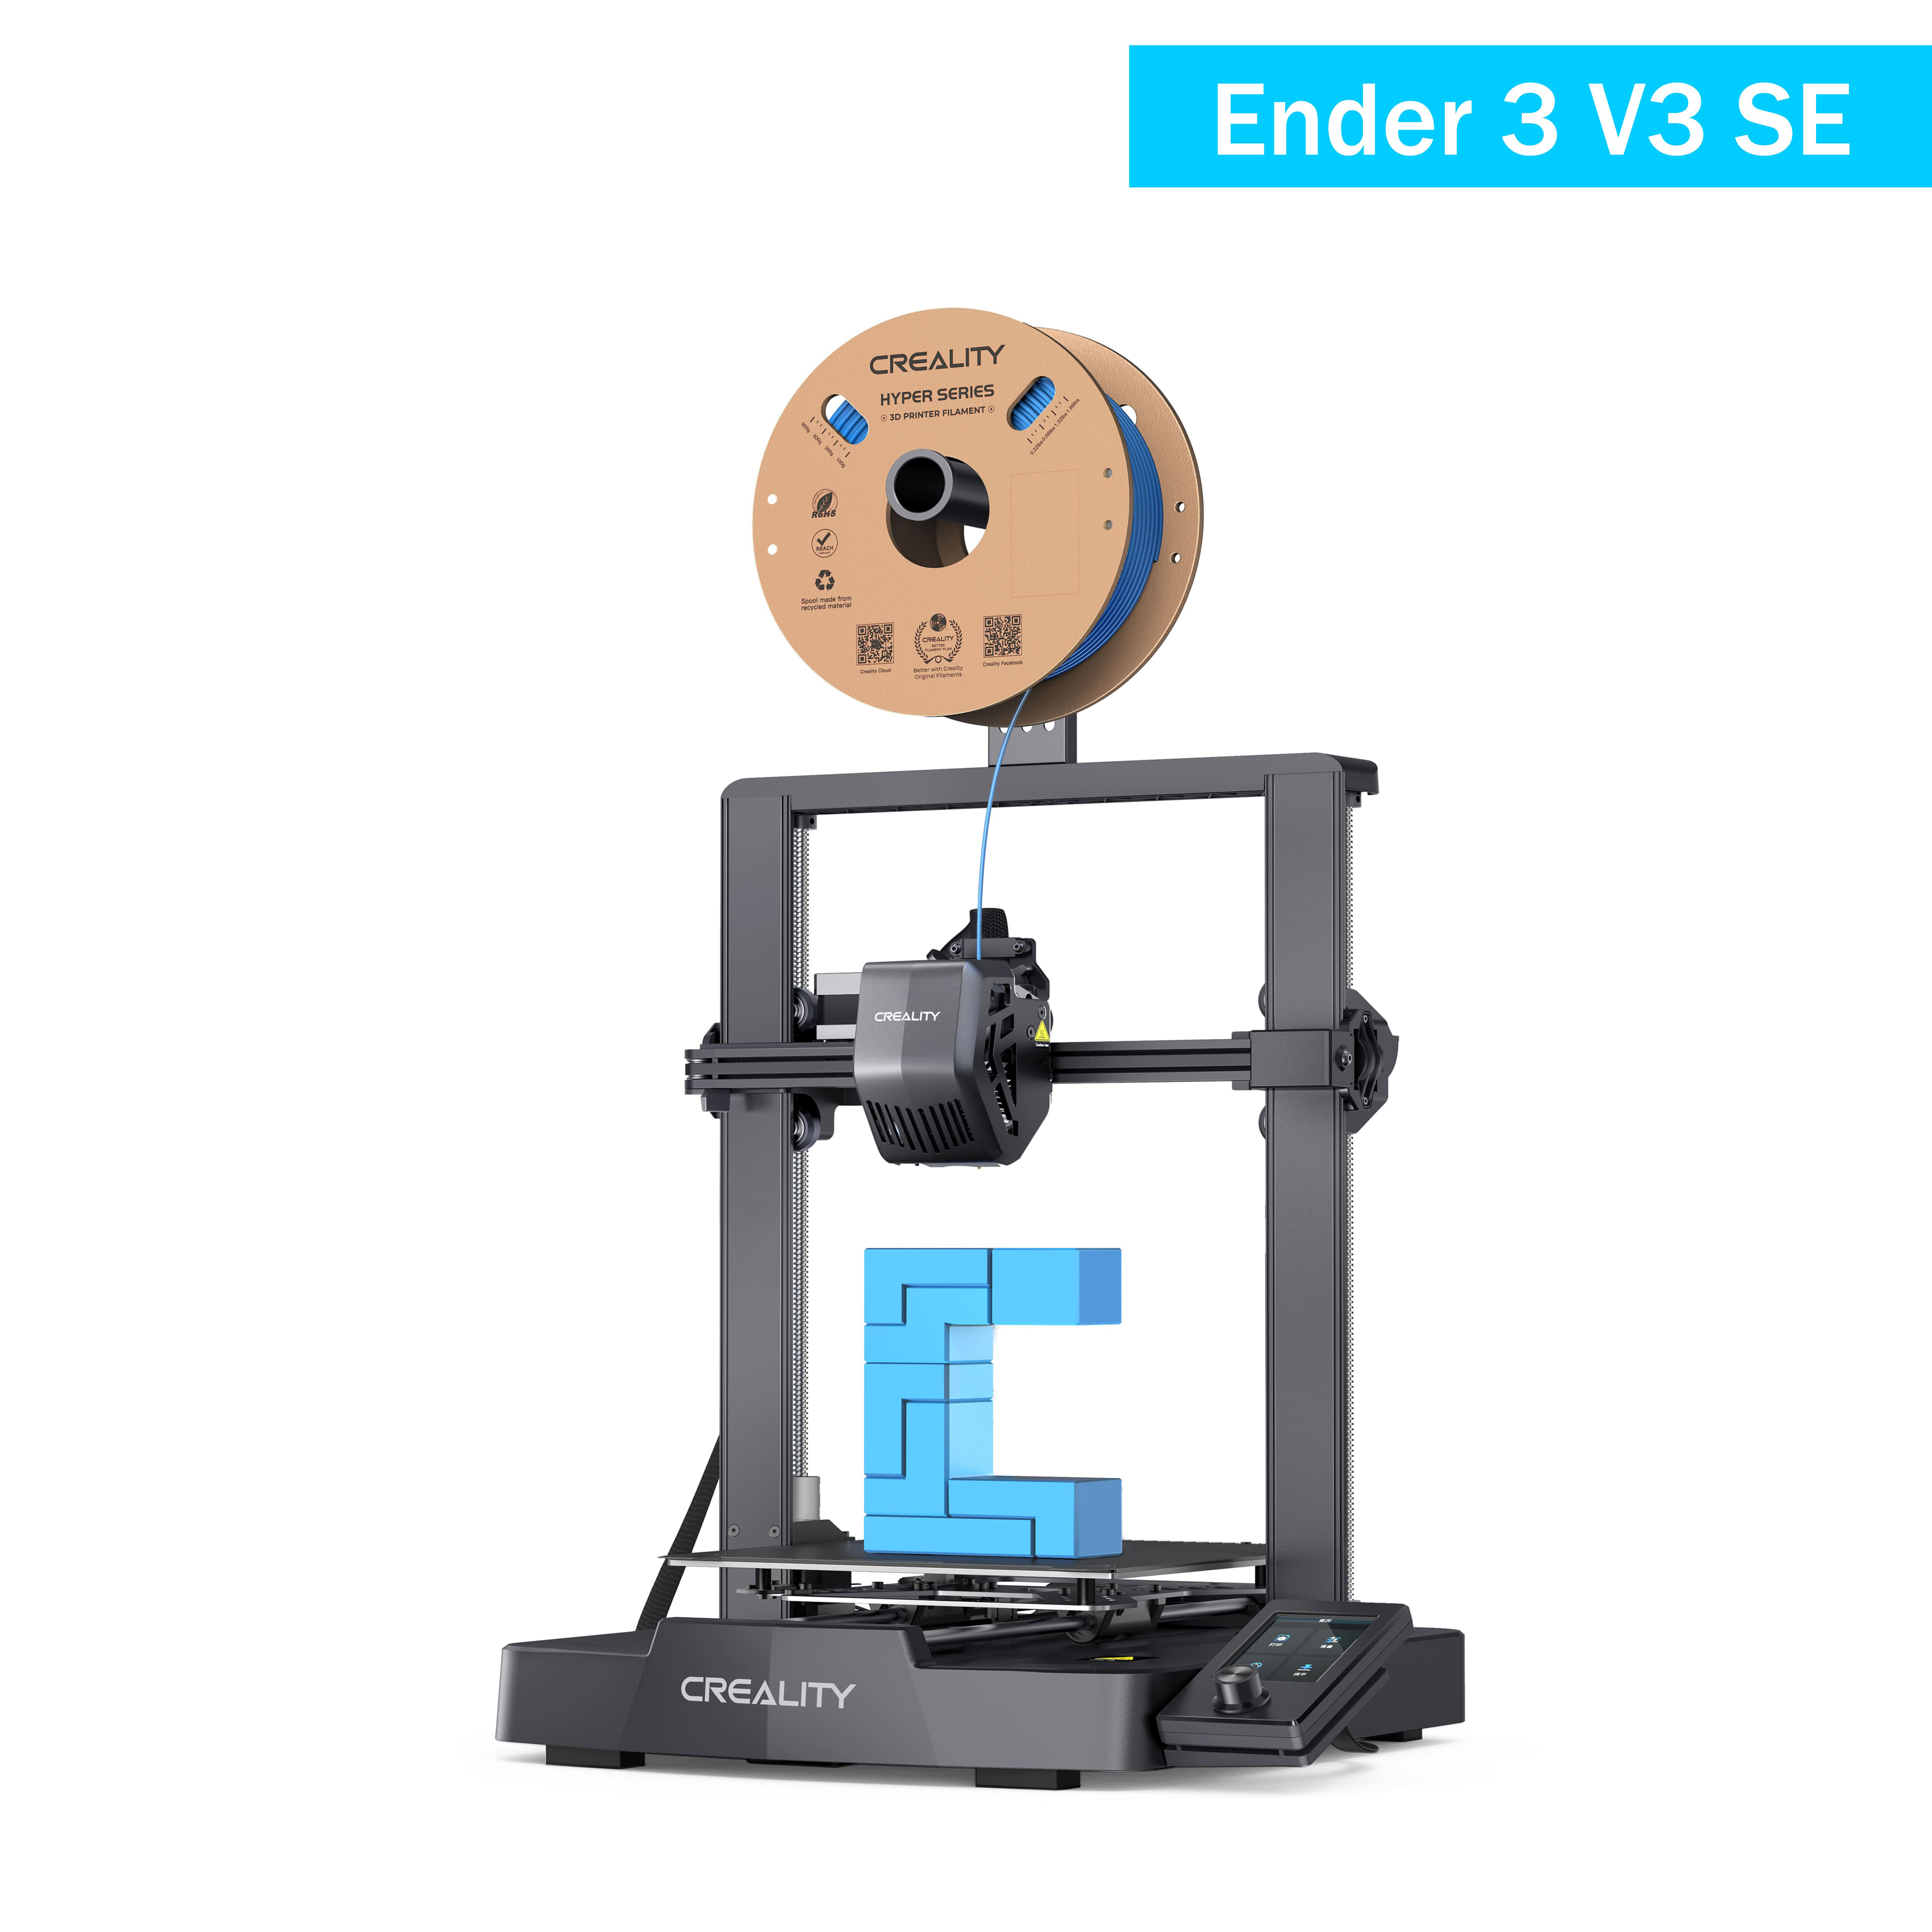 Creality-official-3d-printer-store-ender-3-v3-se-3dprinter-for-sale.jpg